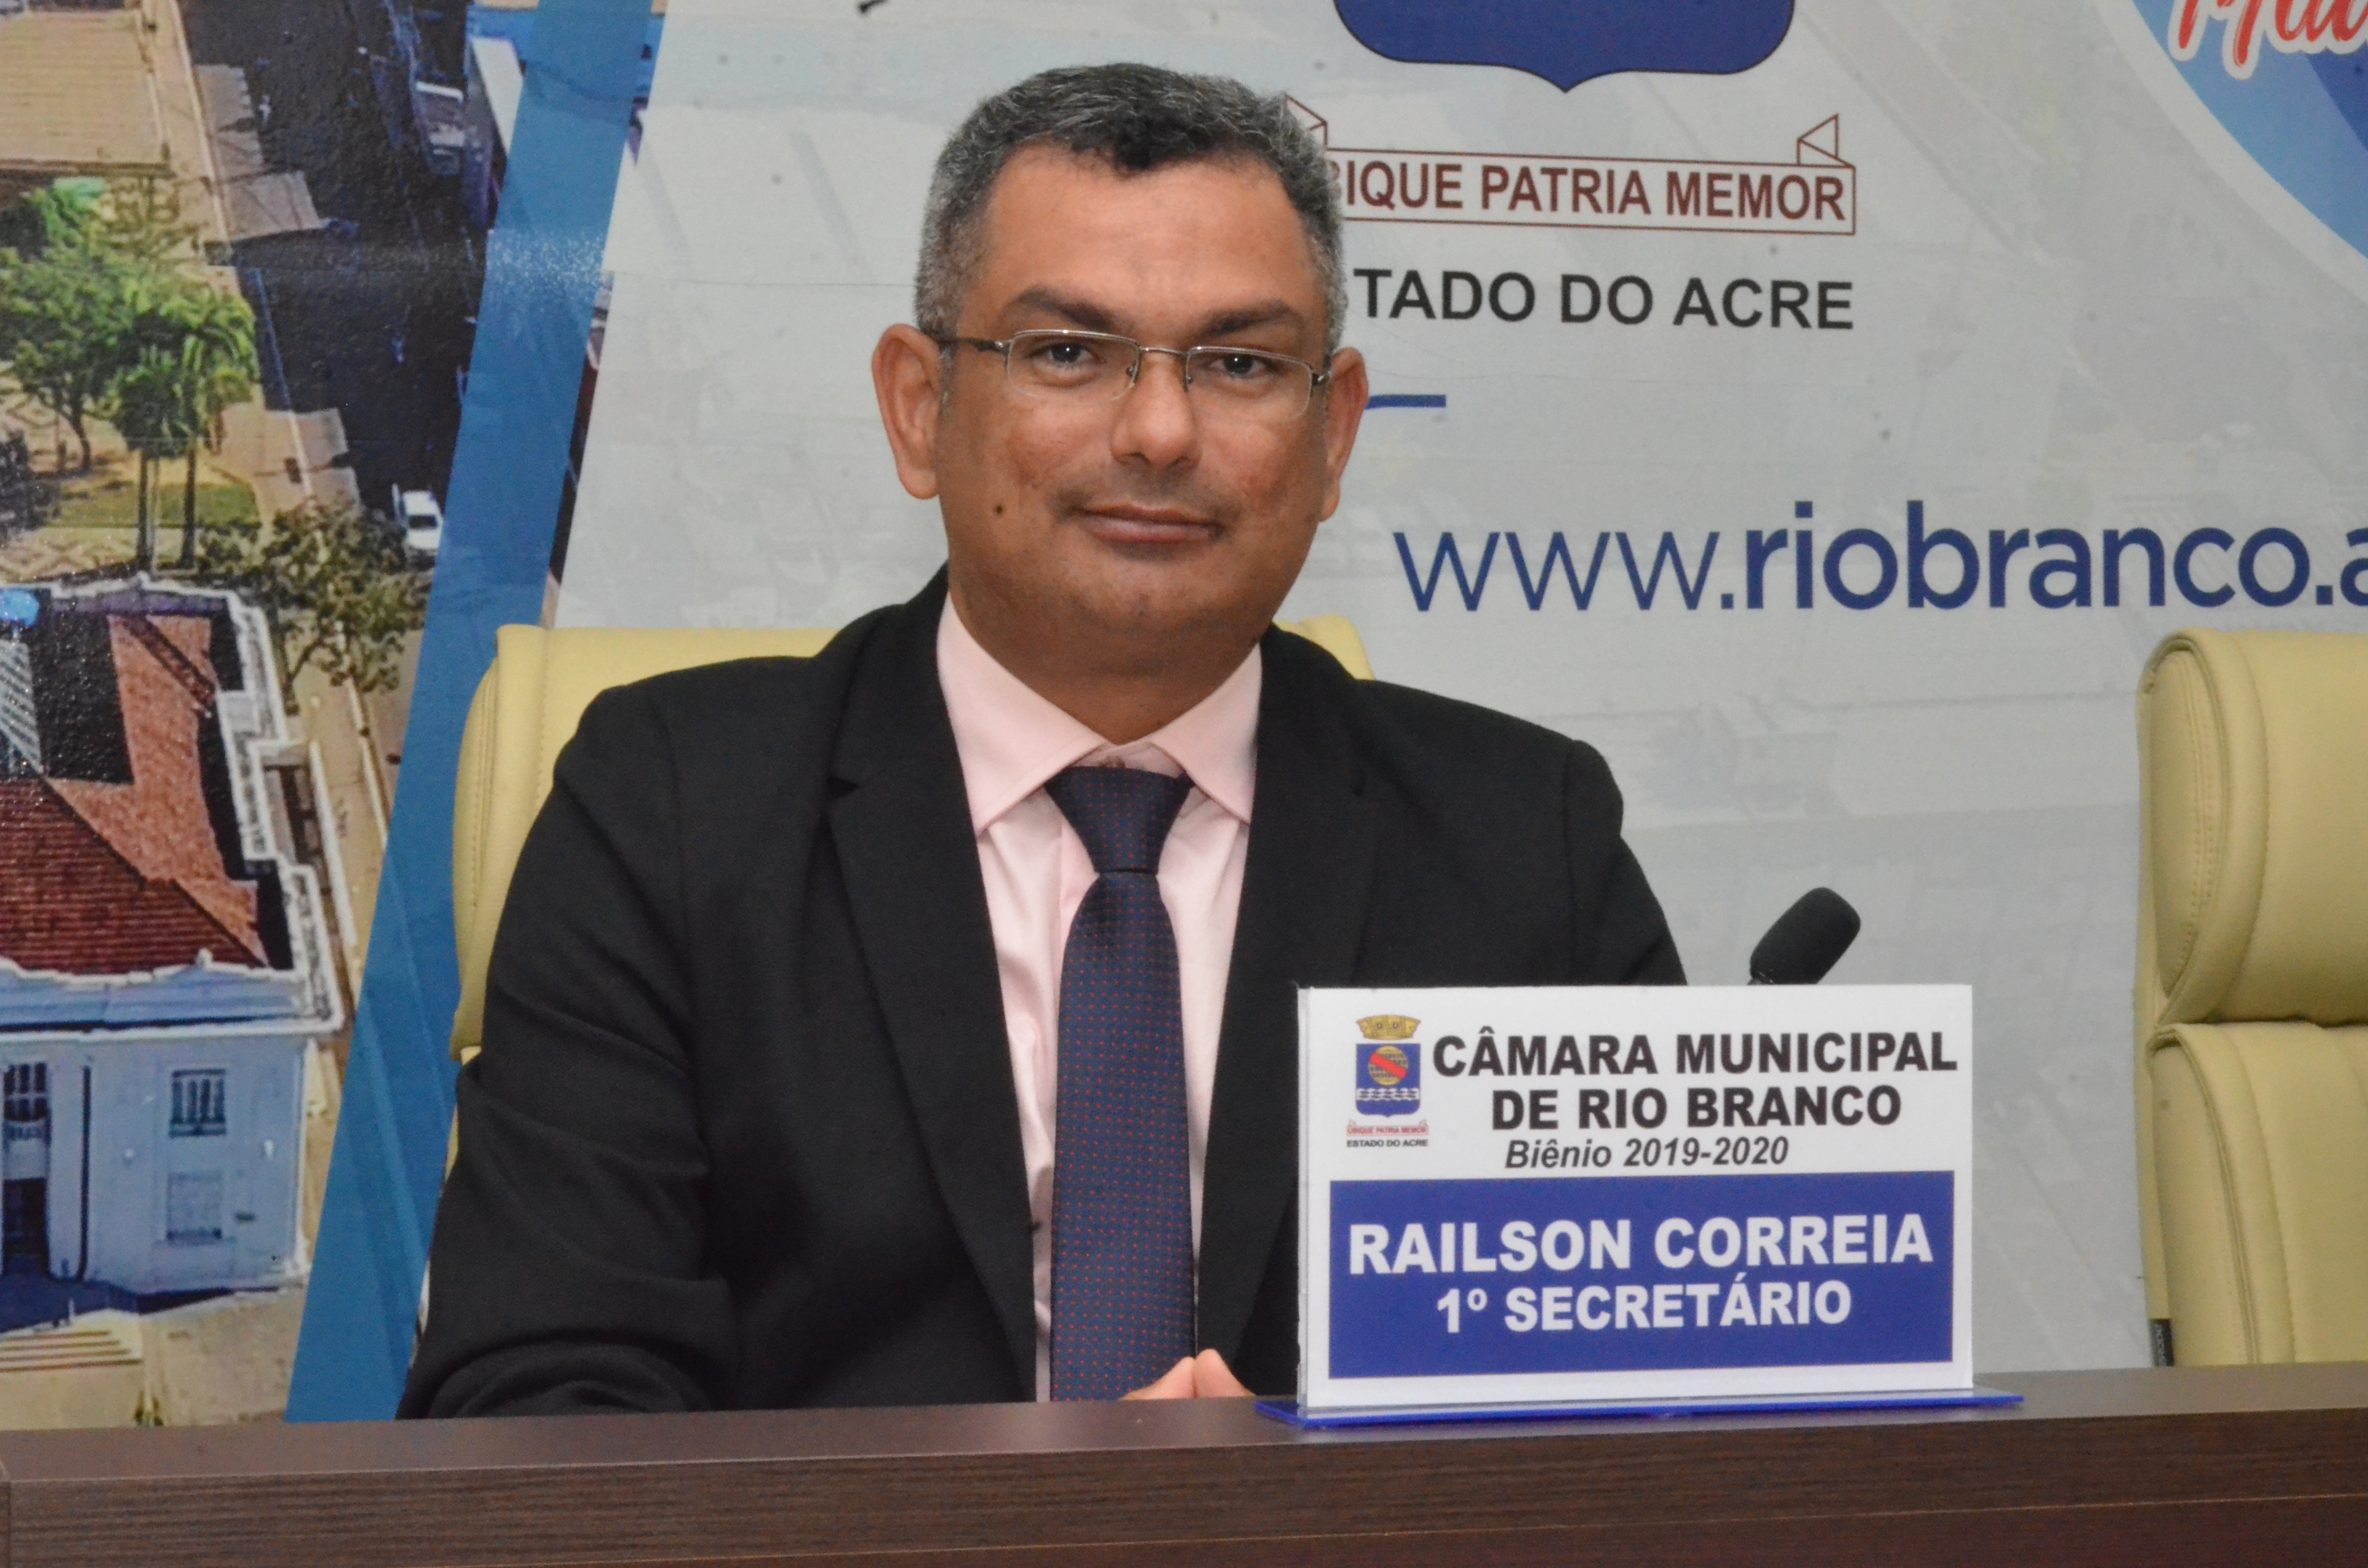 Railson Correia destaca trabalho desenvolvido pela prefeitura de Rio Branco